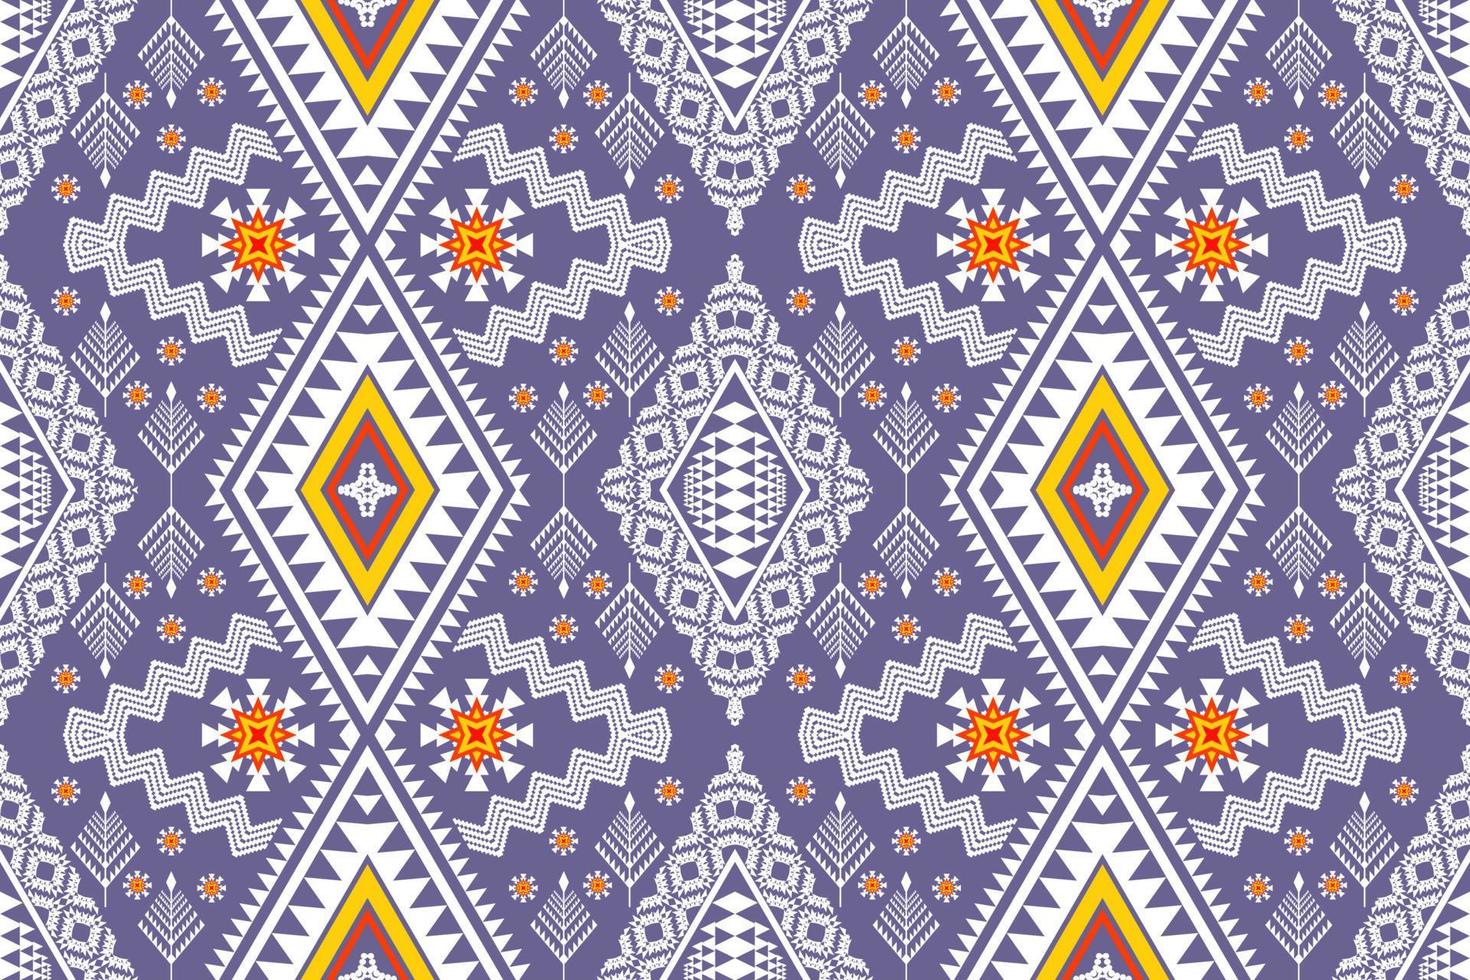 geometrico etnico orientale tradizionale pattern.figure ricamo tribale style.design per carta da parati, abbigliamento, confezionamento, tessuto, illustrazione vettoriale